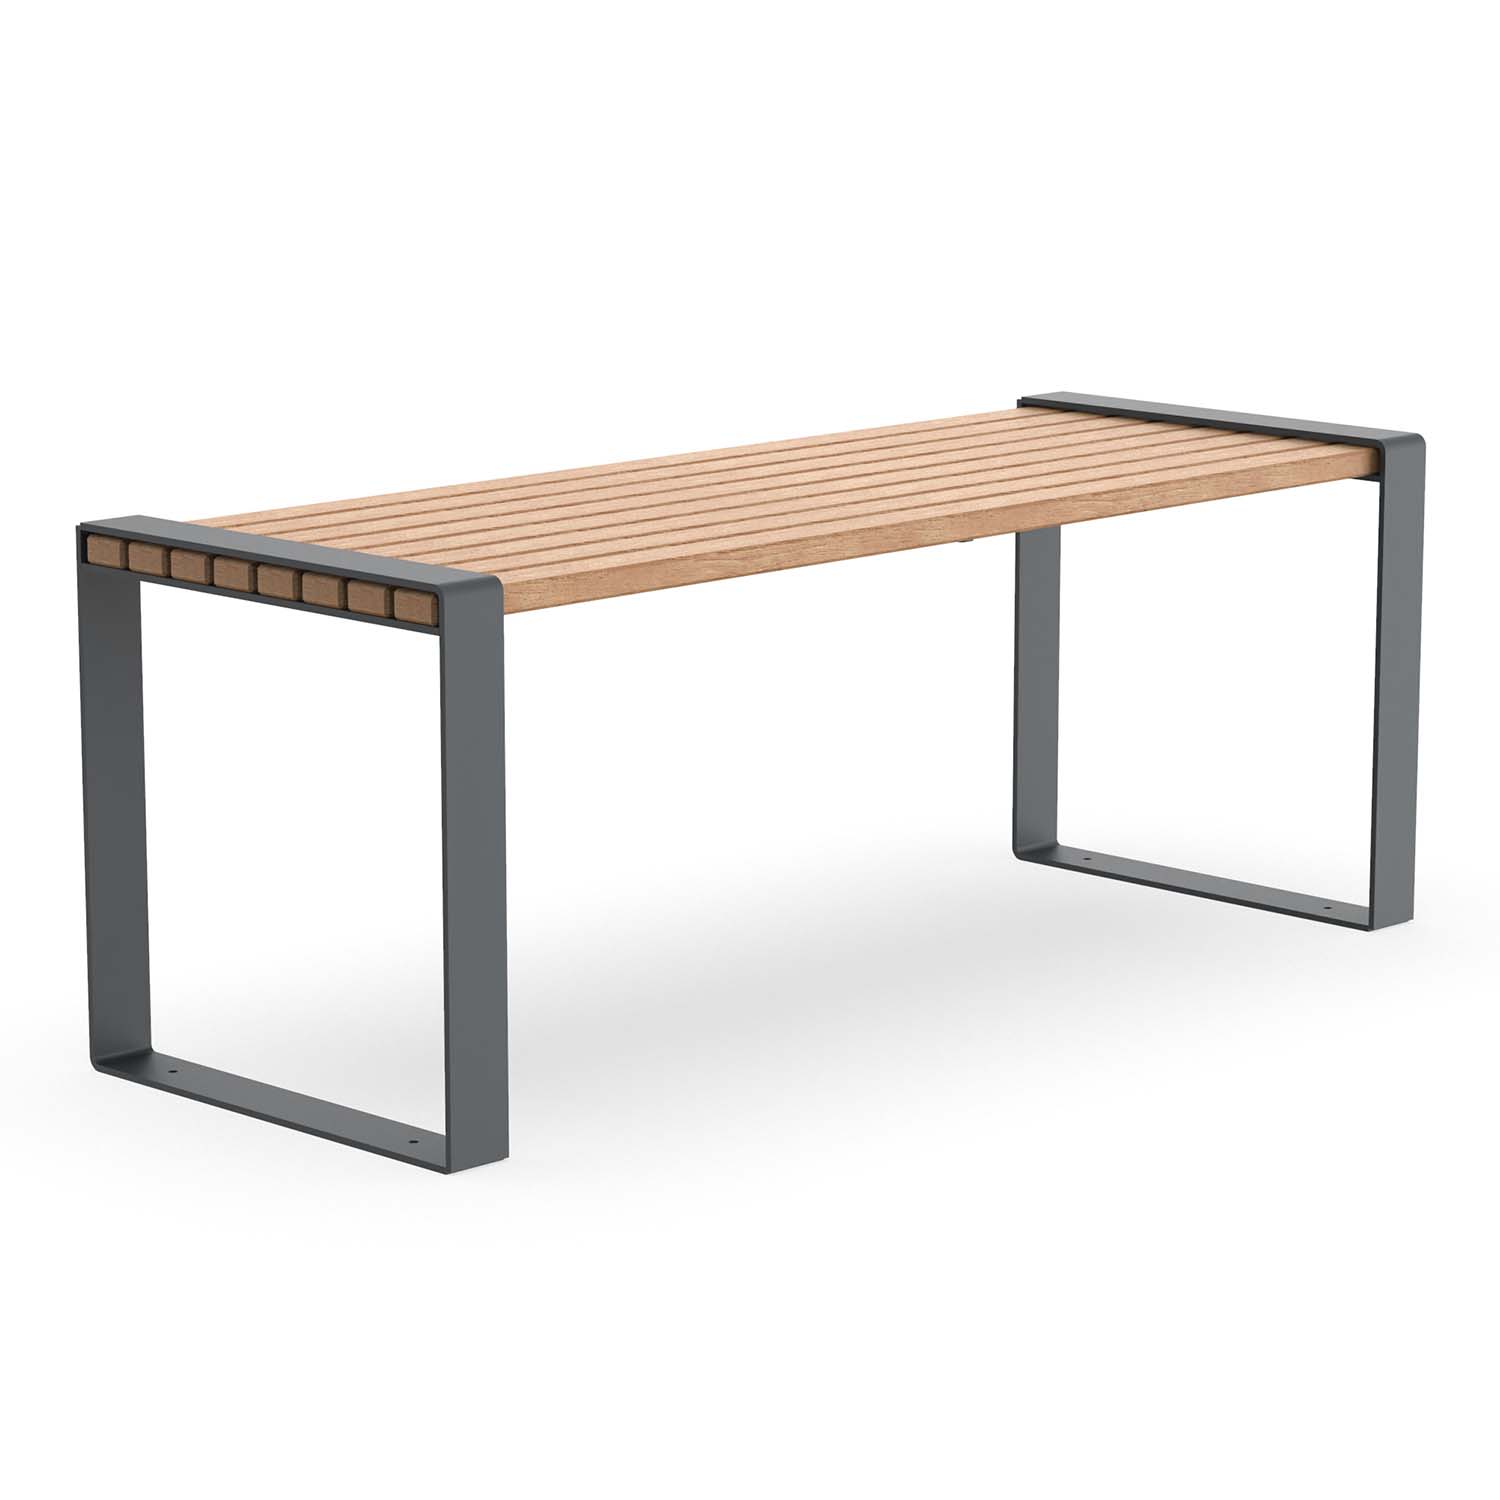 Outdoor-Tisch für Gartenbank CONSOLA, Flachstahl, Tischfläche aus Holz, verzinkt und farbbeschichtet